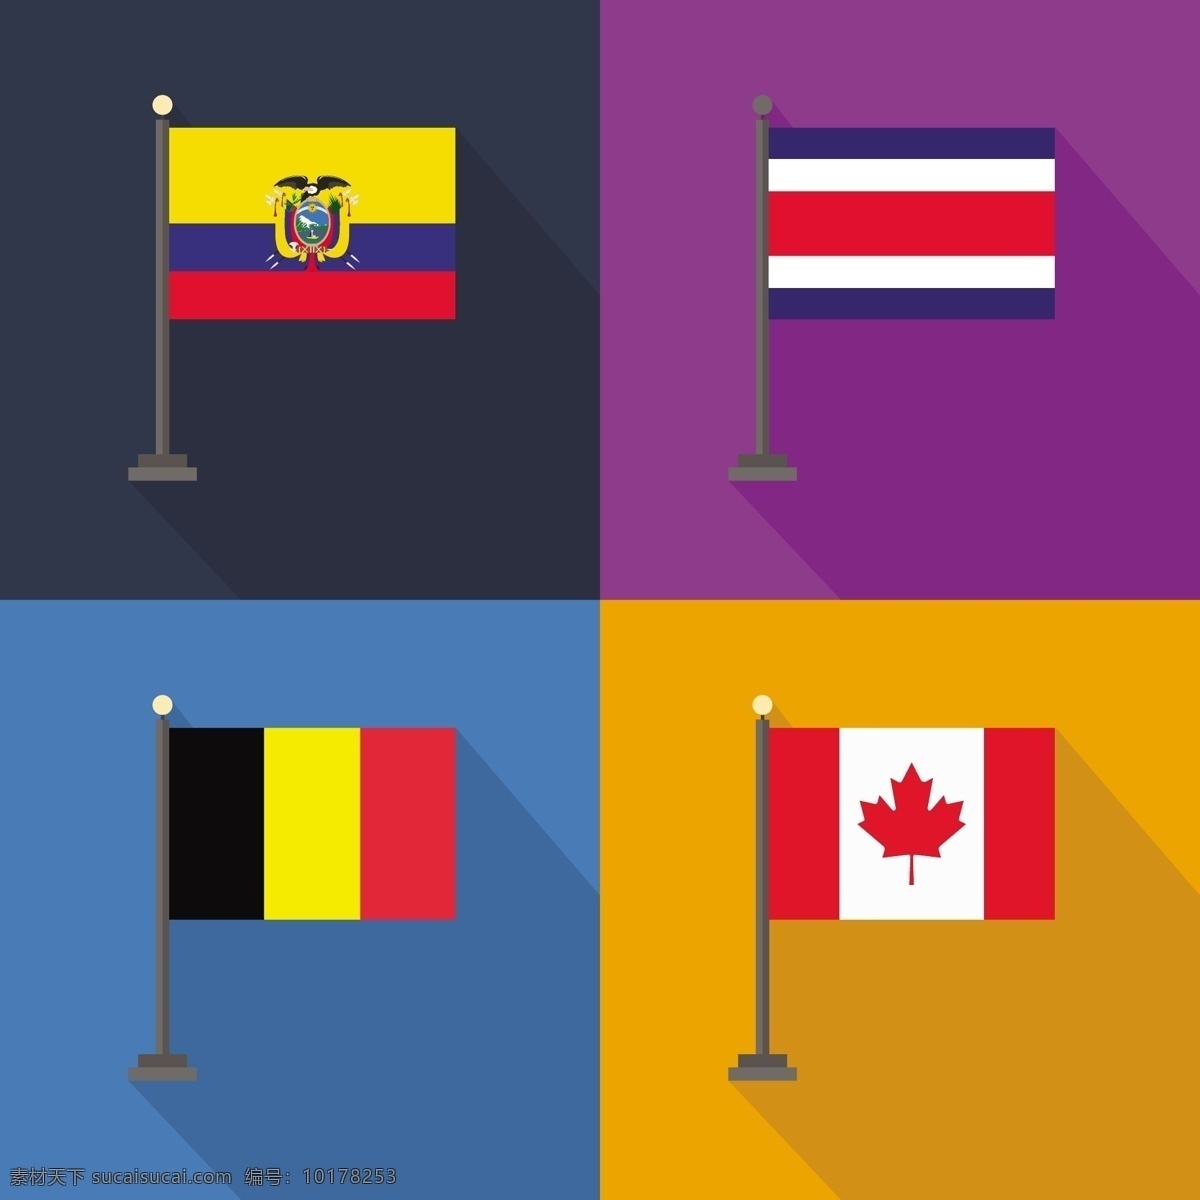 厄瓜多尔 哥斯达黎加 加拿大 国旗 世界 旗帜 标志 国家 爱国 地理 比利时 橙色